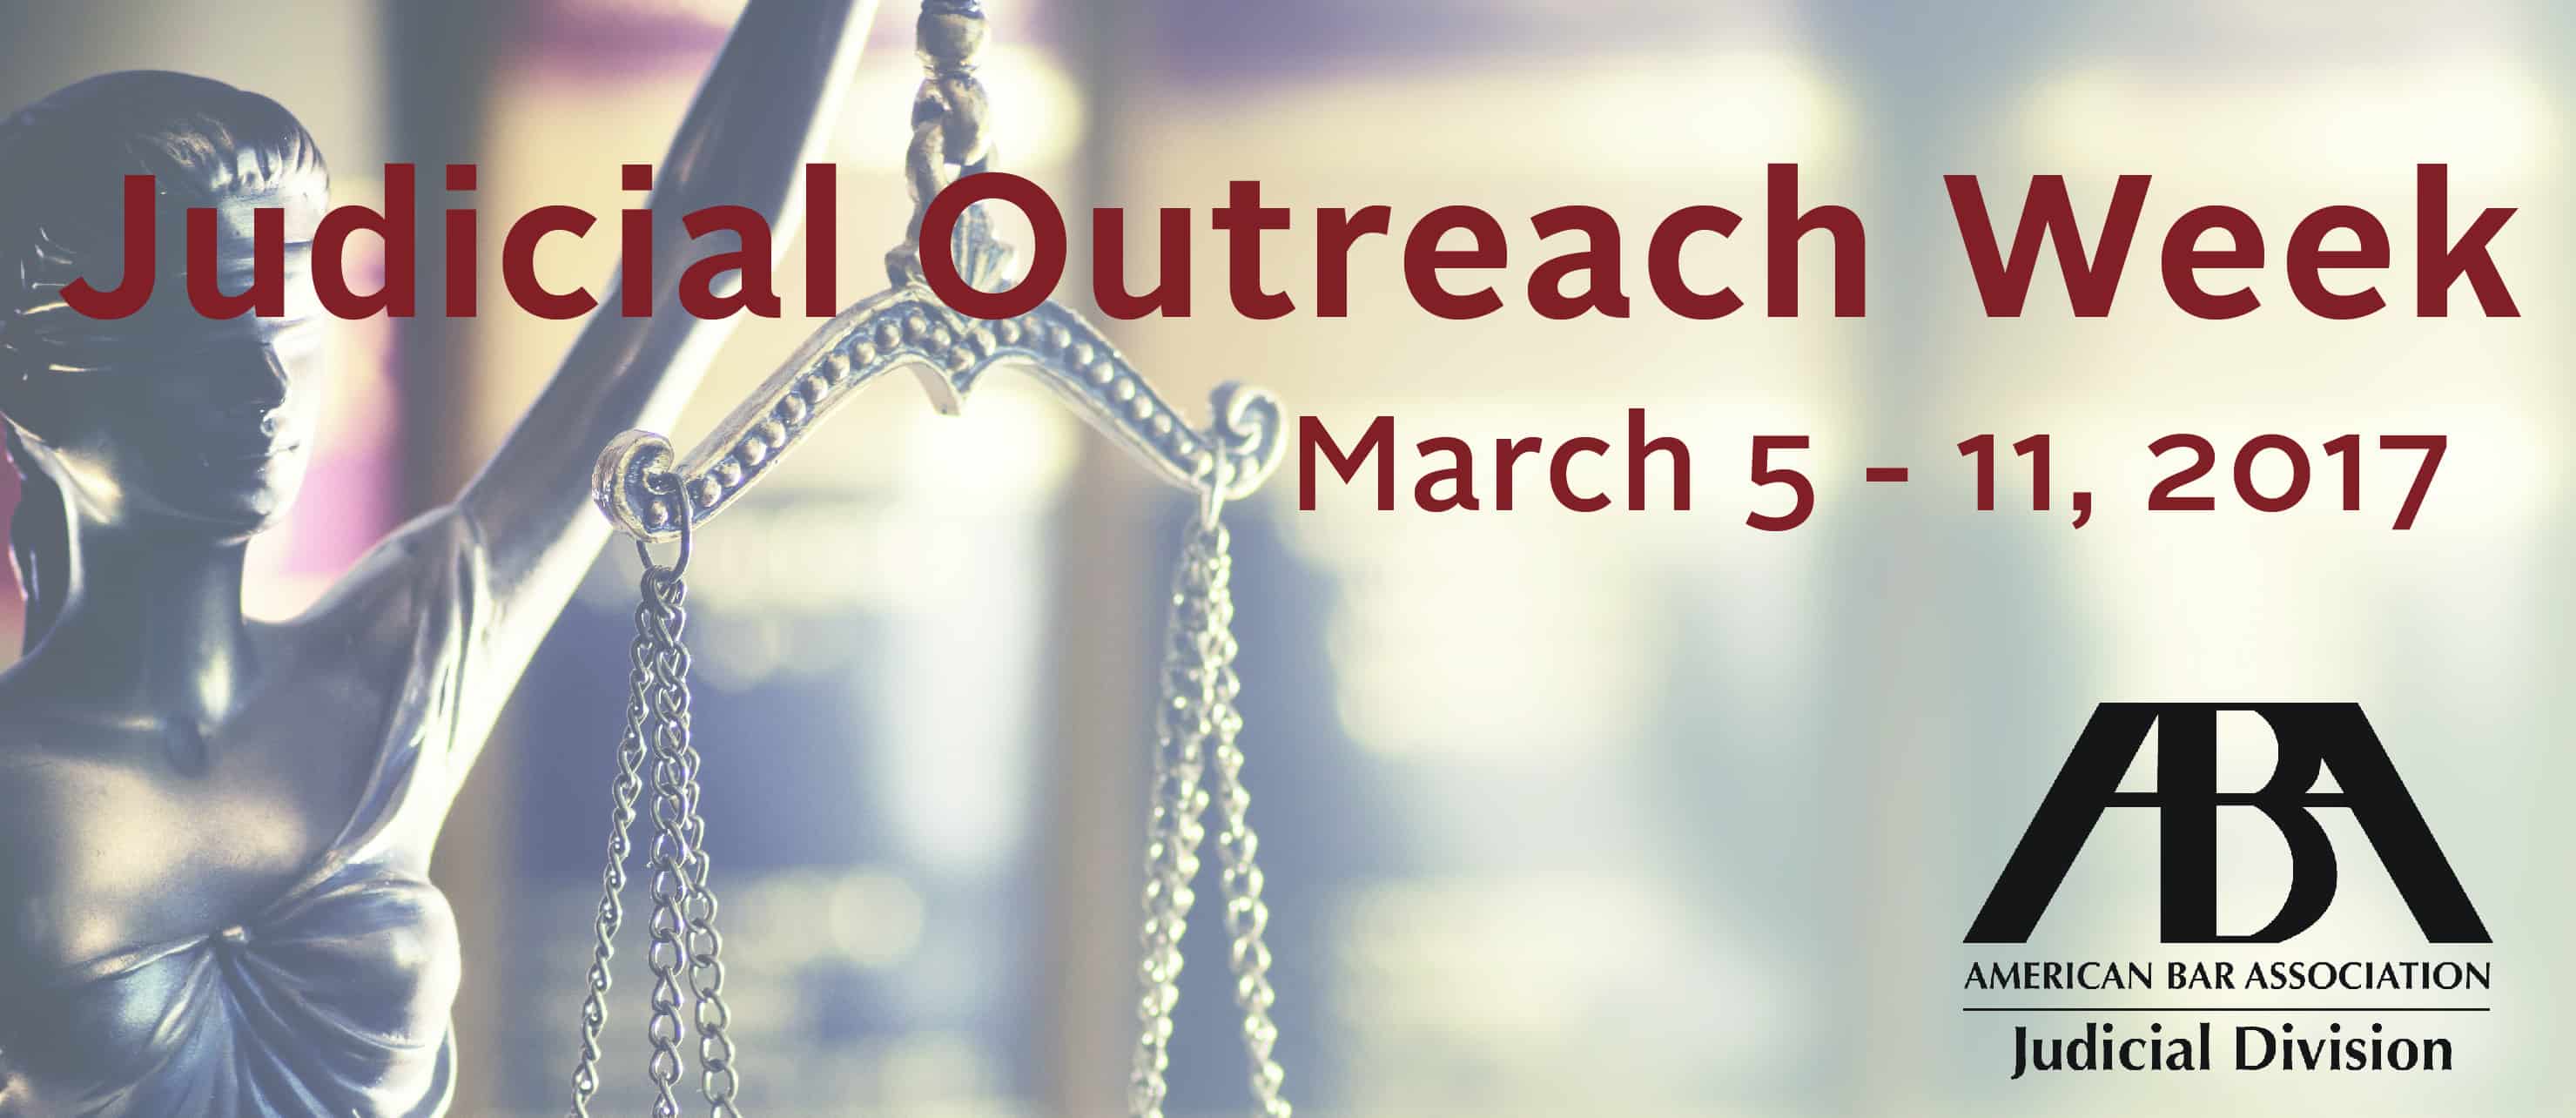 Judicial Outreach